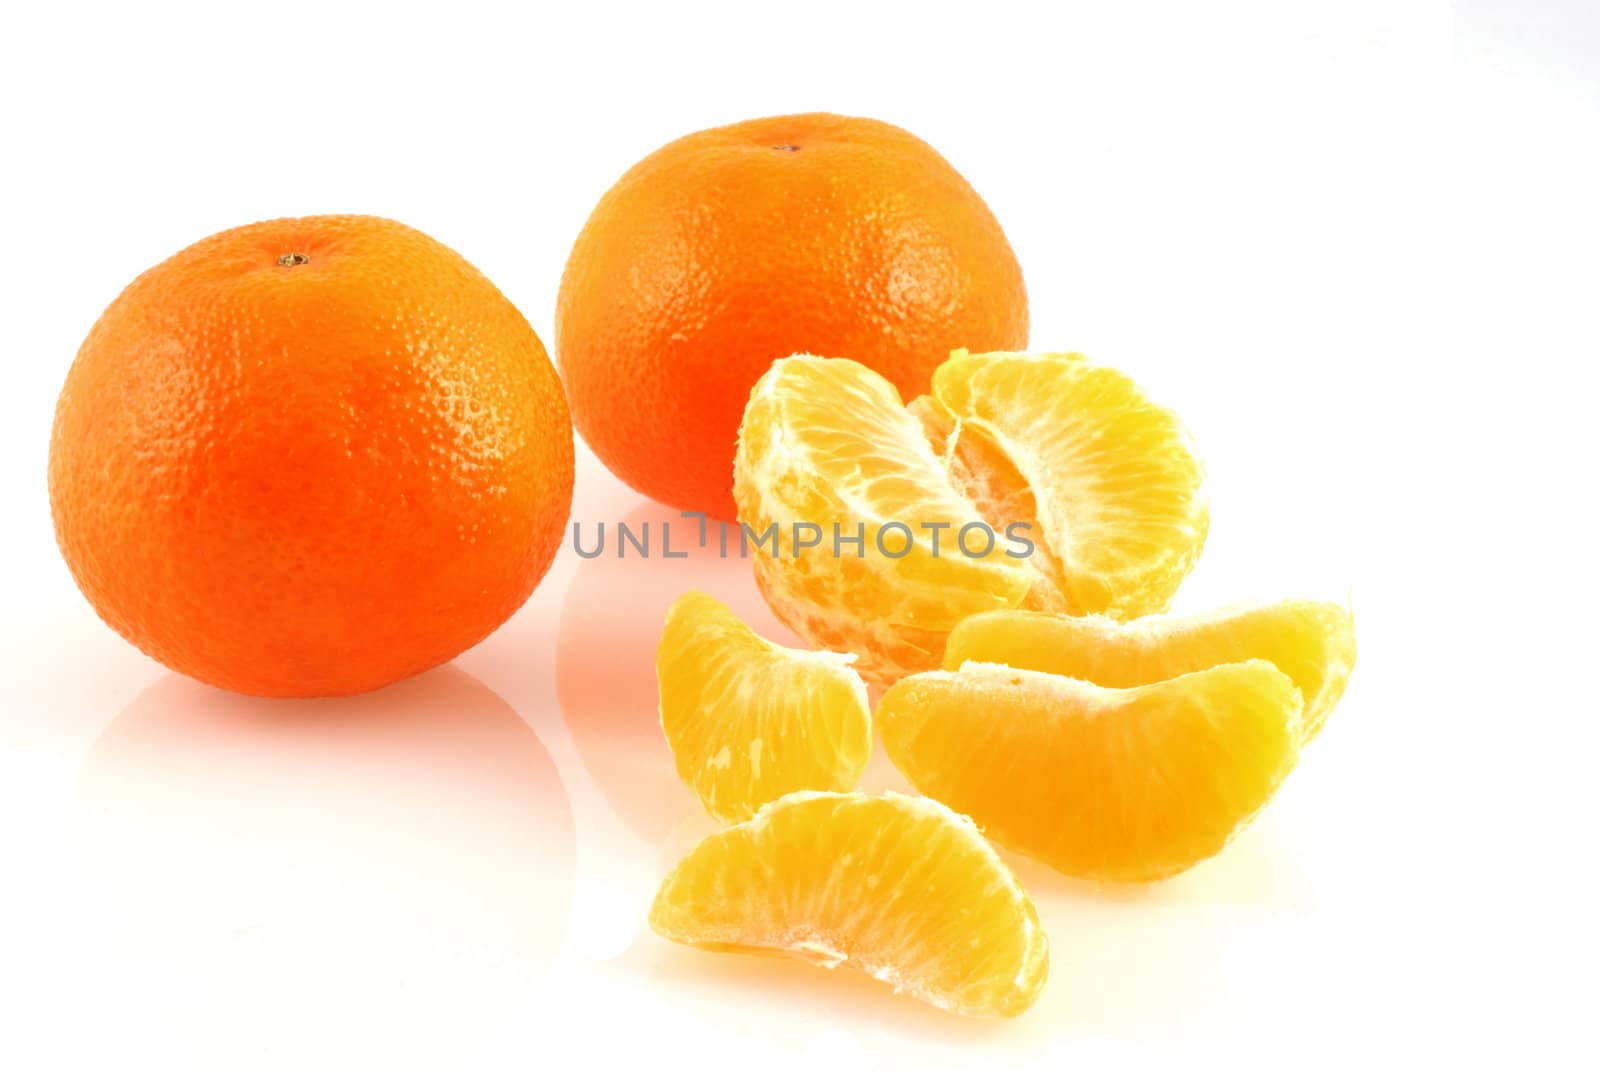 Three mandarins on white; one peeled..two in skin.